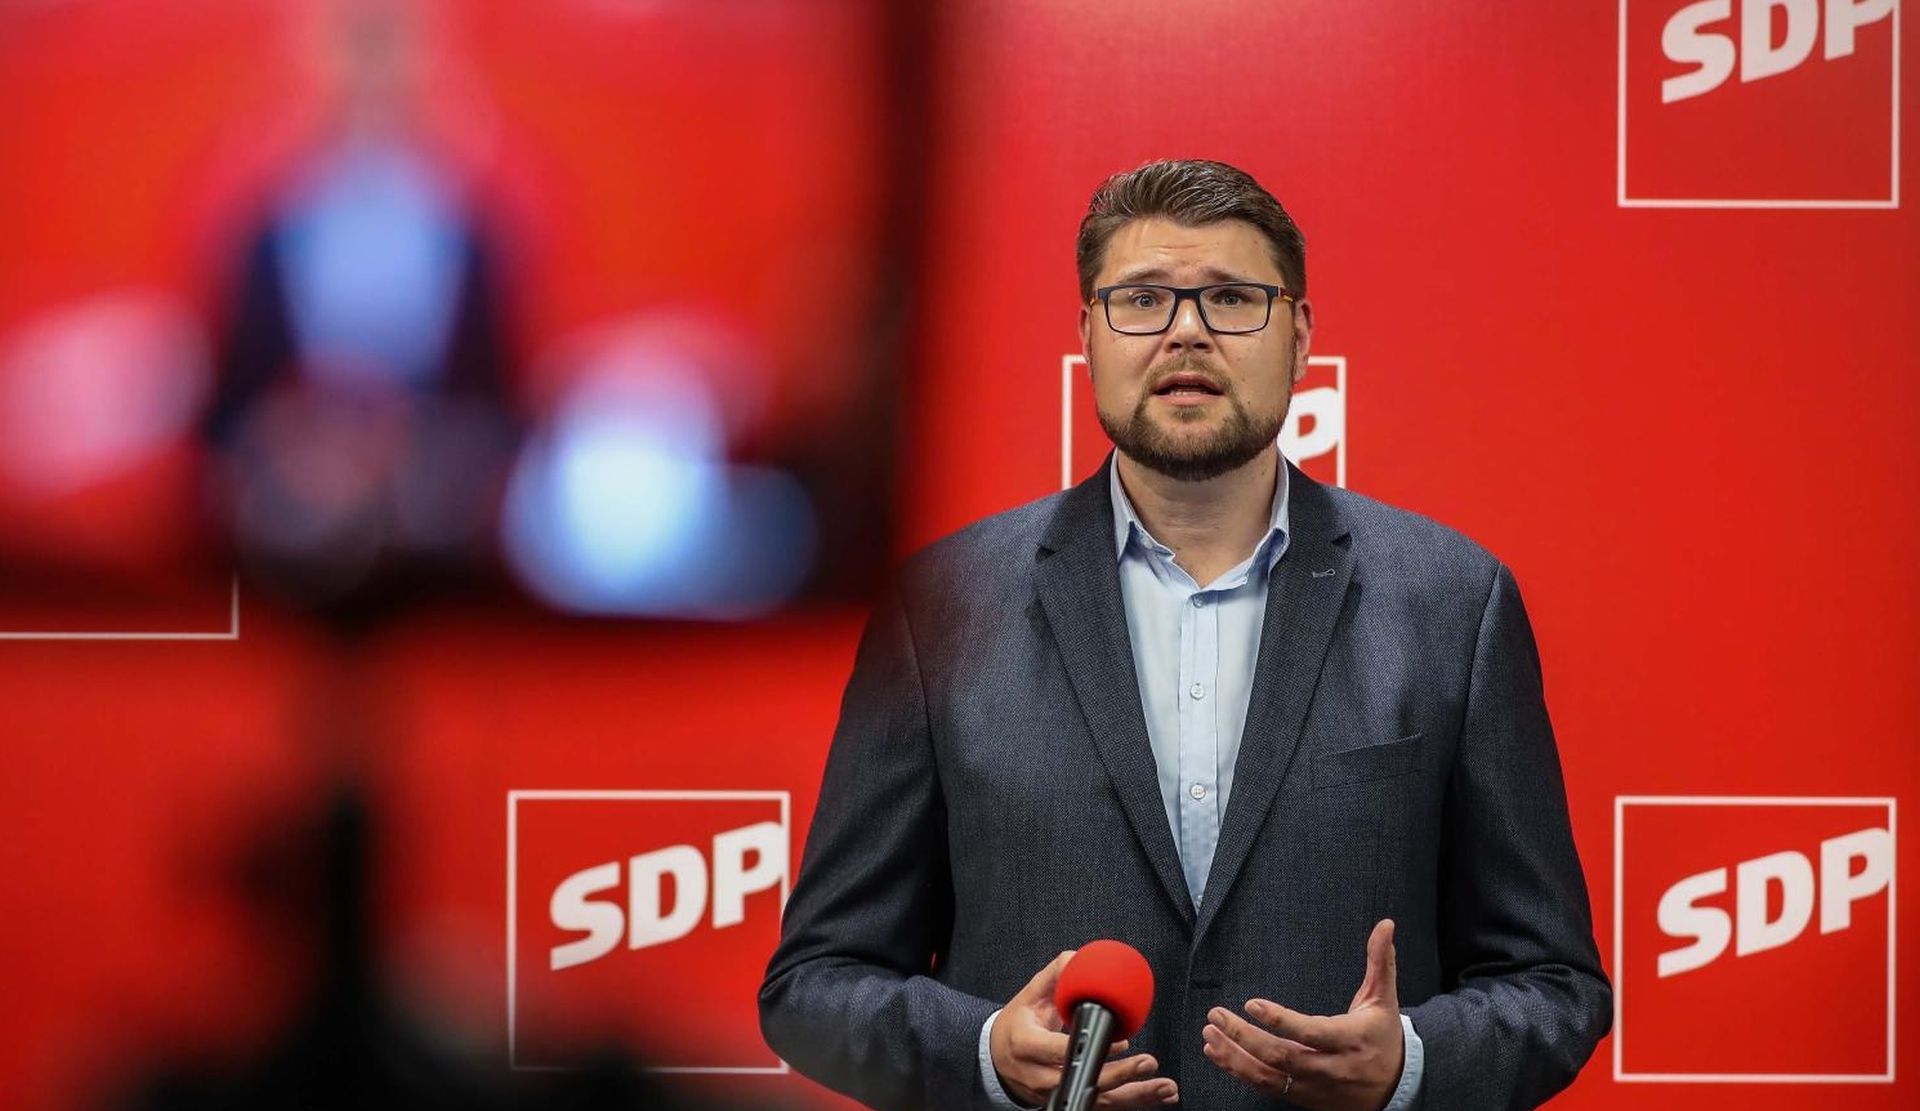 03.10.2020., Zagreb - U sjedistu SDP-a nakon unutarstranackih izbora predstavljen je novi predsjednik stranke Pedja Grbin. Photo: Jurica Galoic/PIXSELL